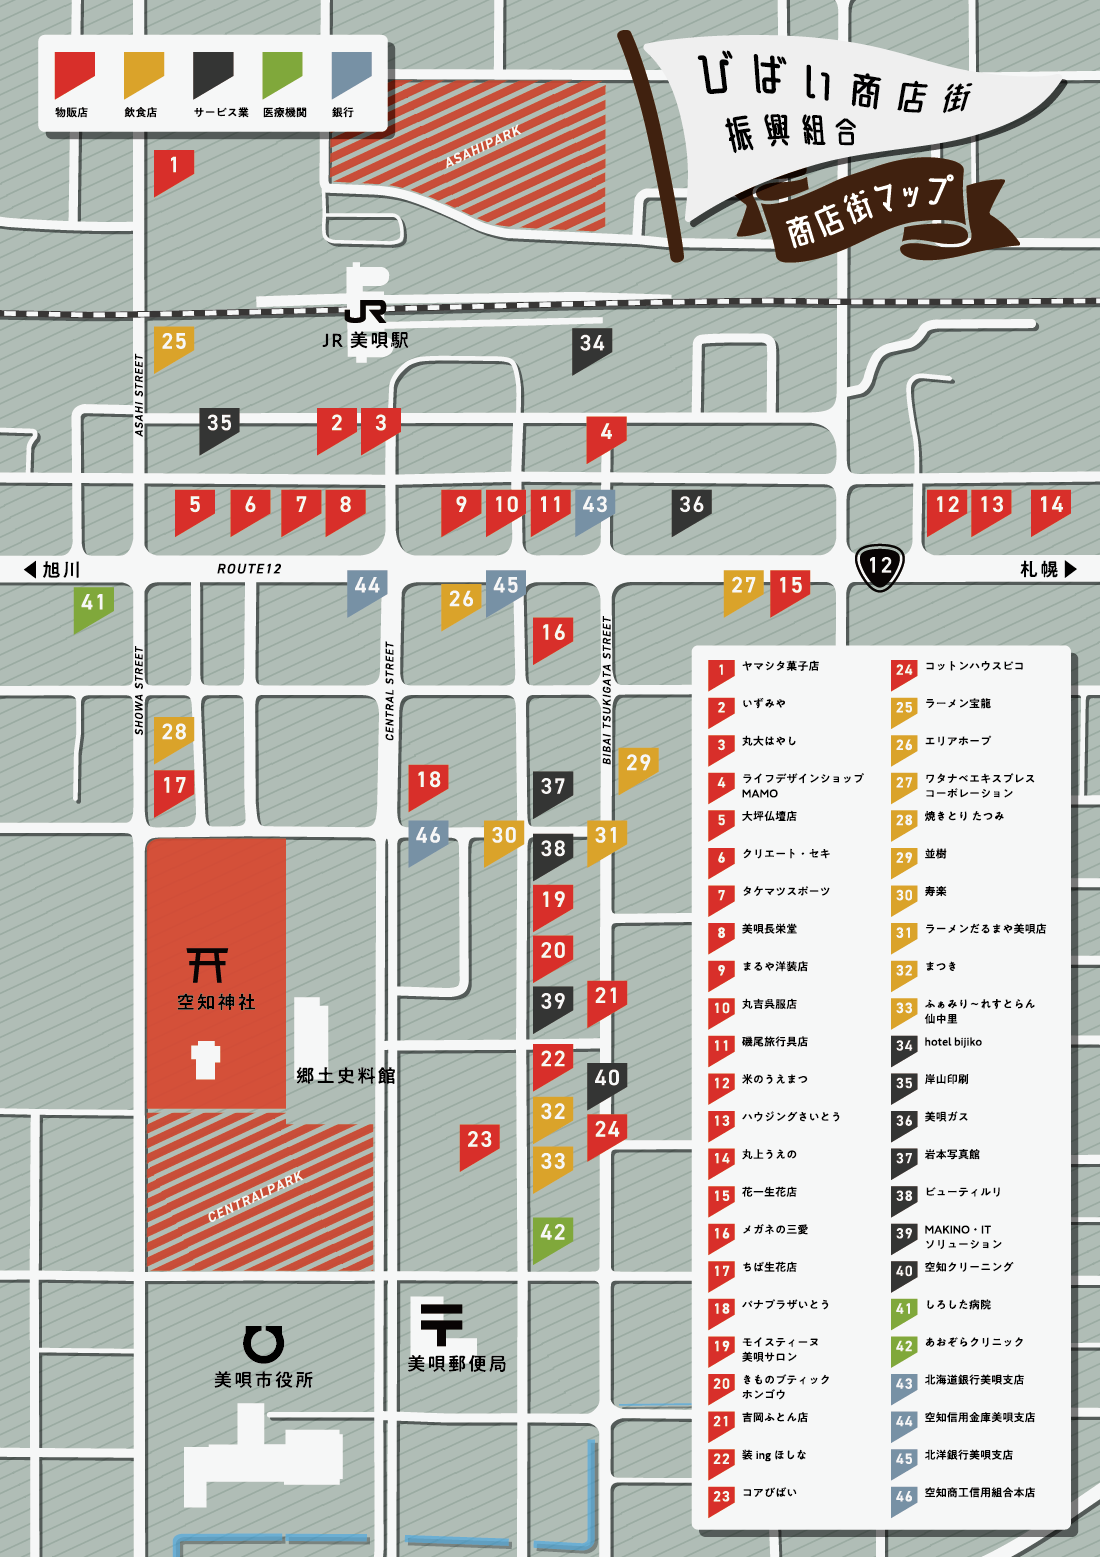 びばい商店街振興組合のマップ